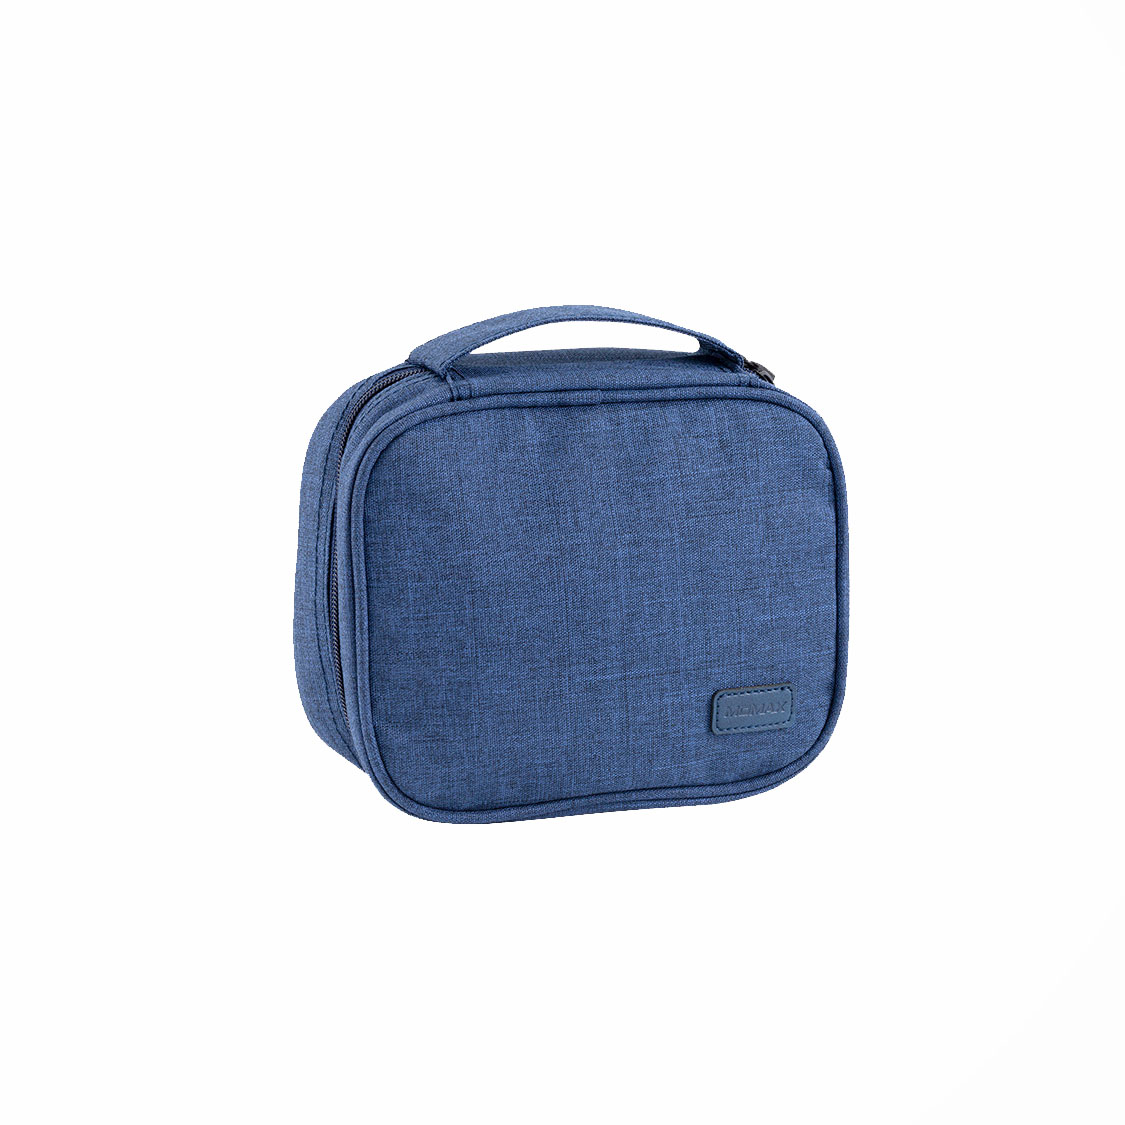 موماكس حقيبة تنظيمية صغيرة للسفر (أزرق)